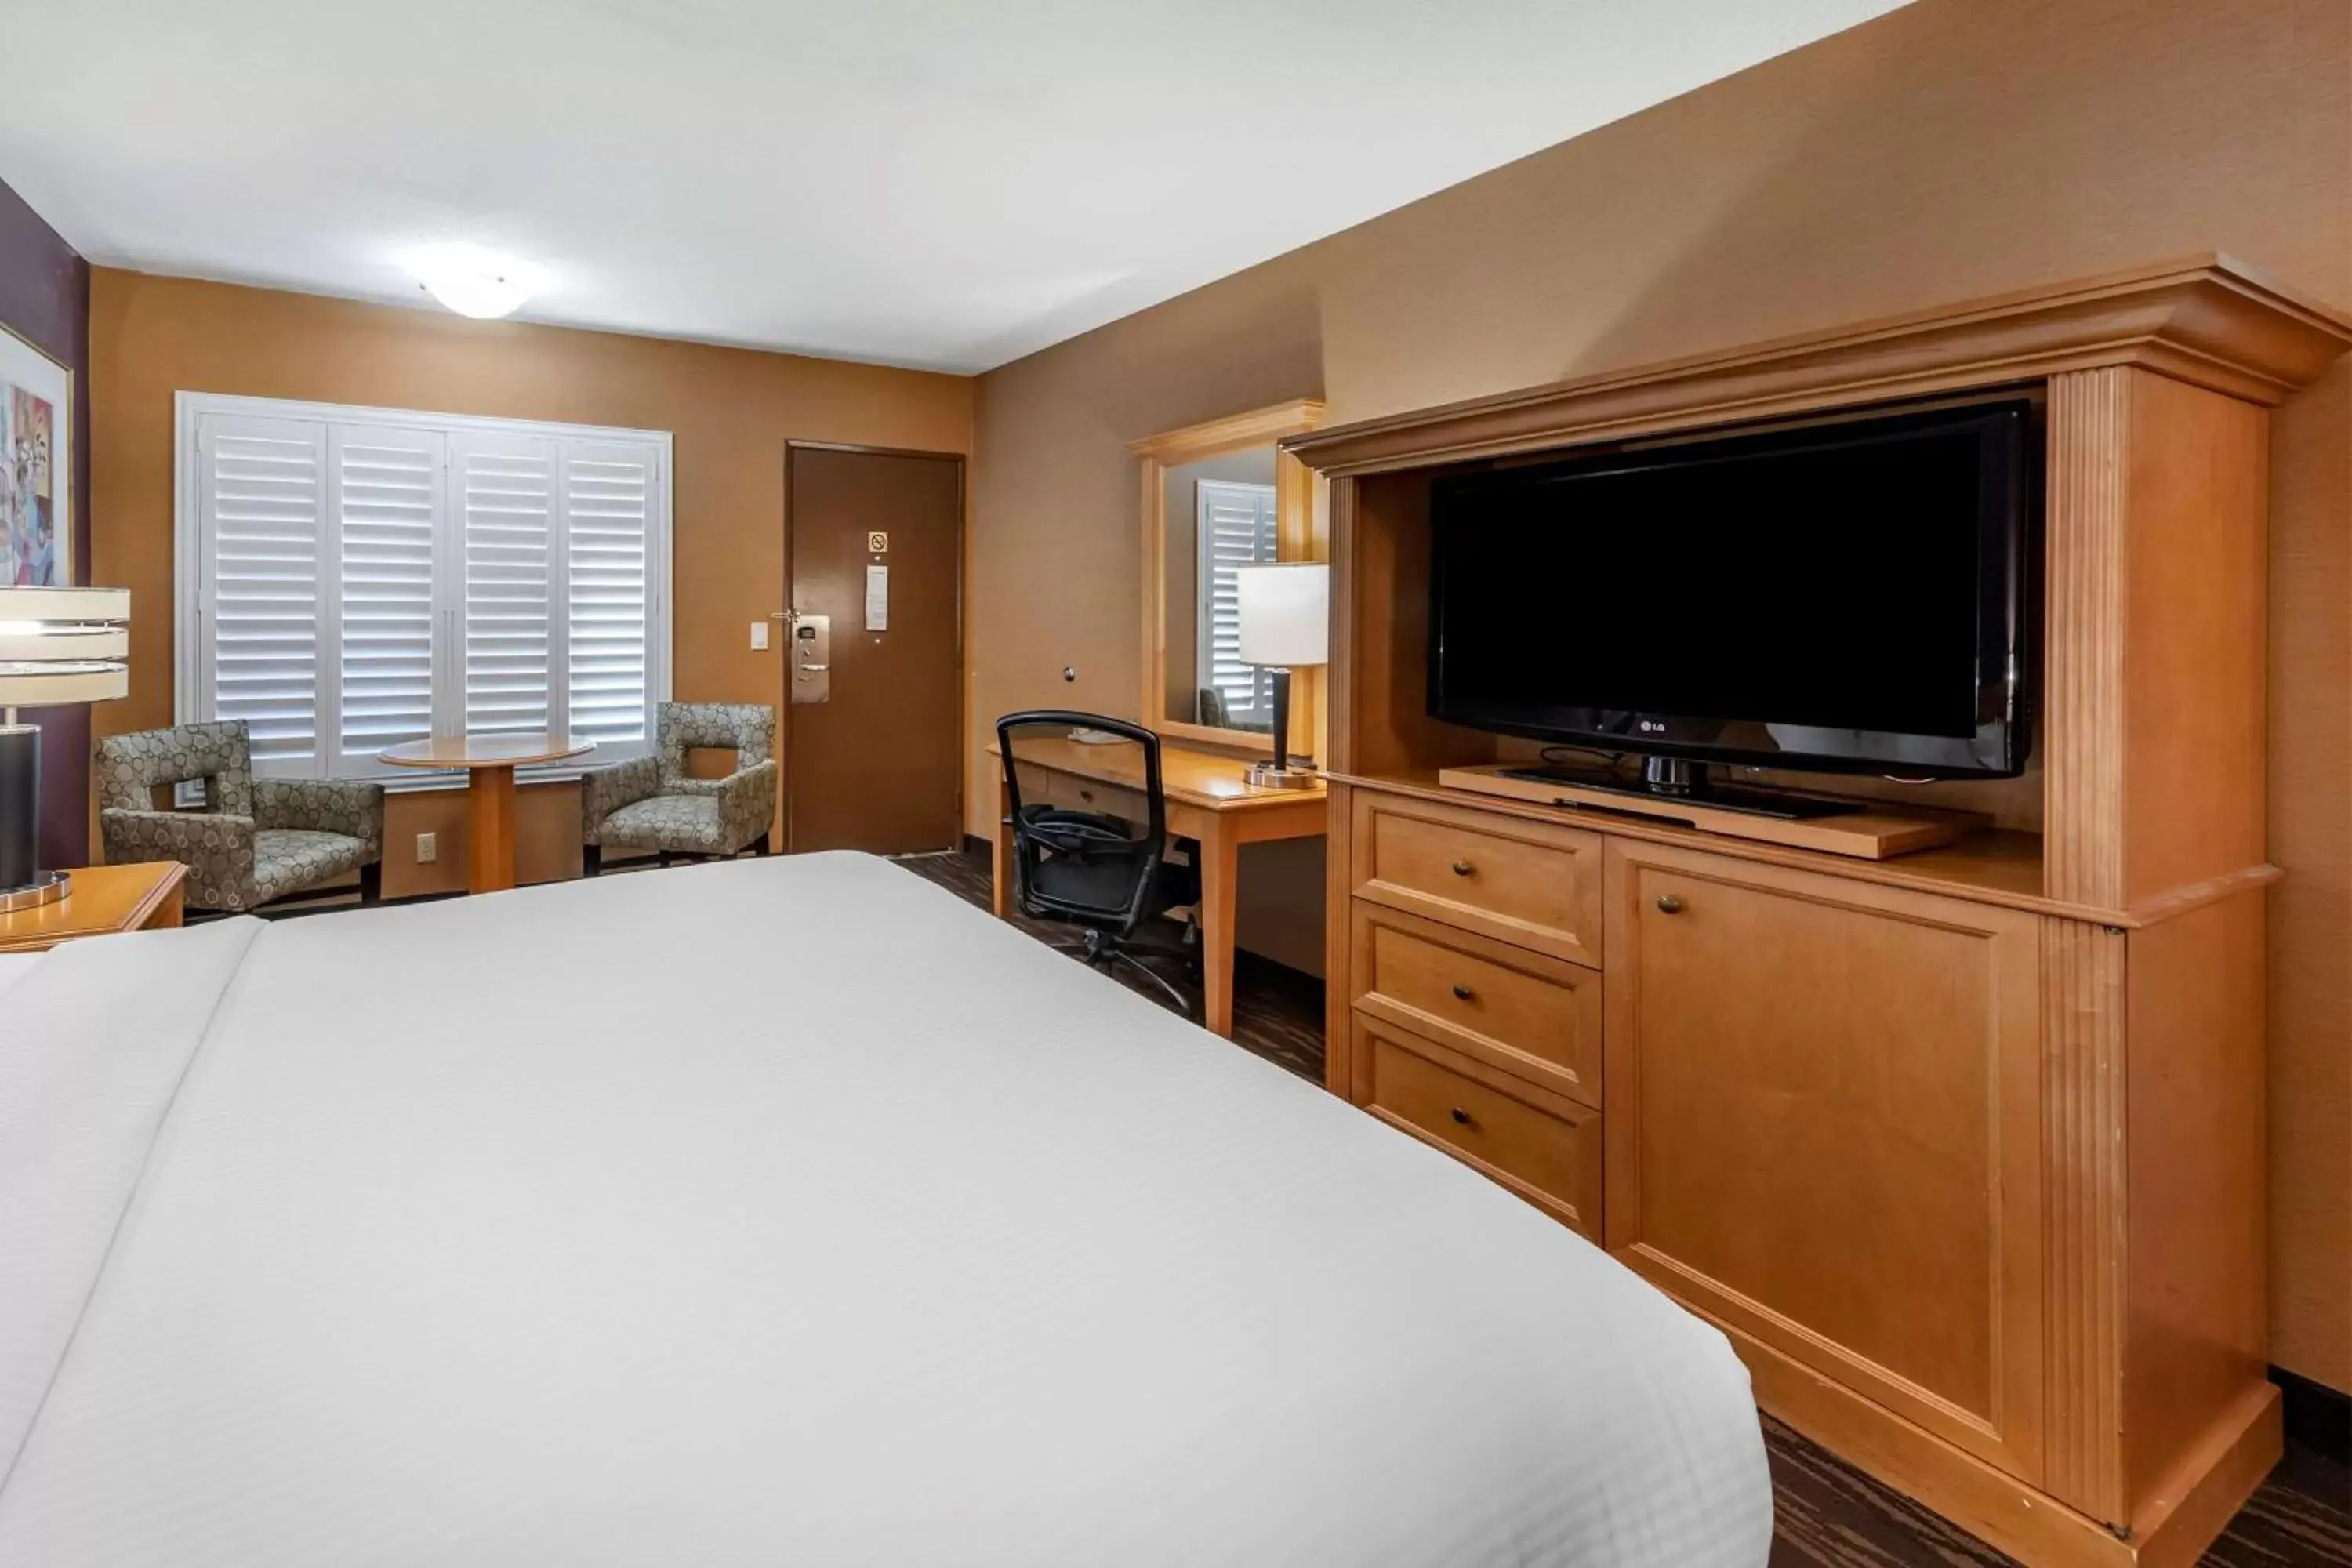 Bedroom, TV/Entertainment Center in Best Western Plus Stovall's Inn